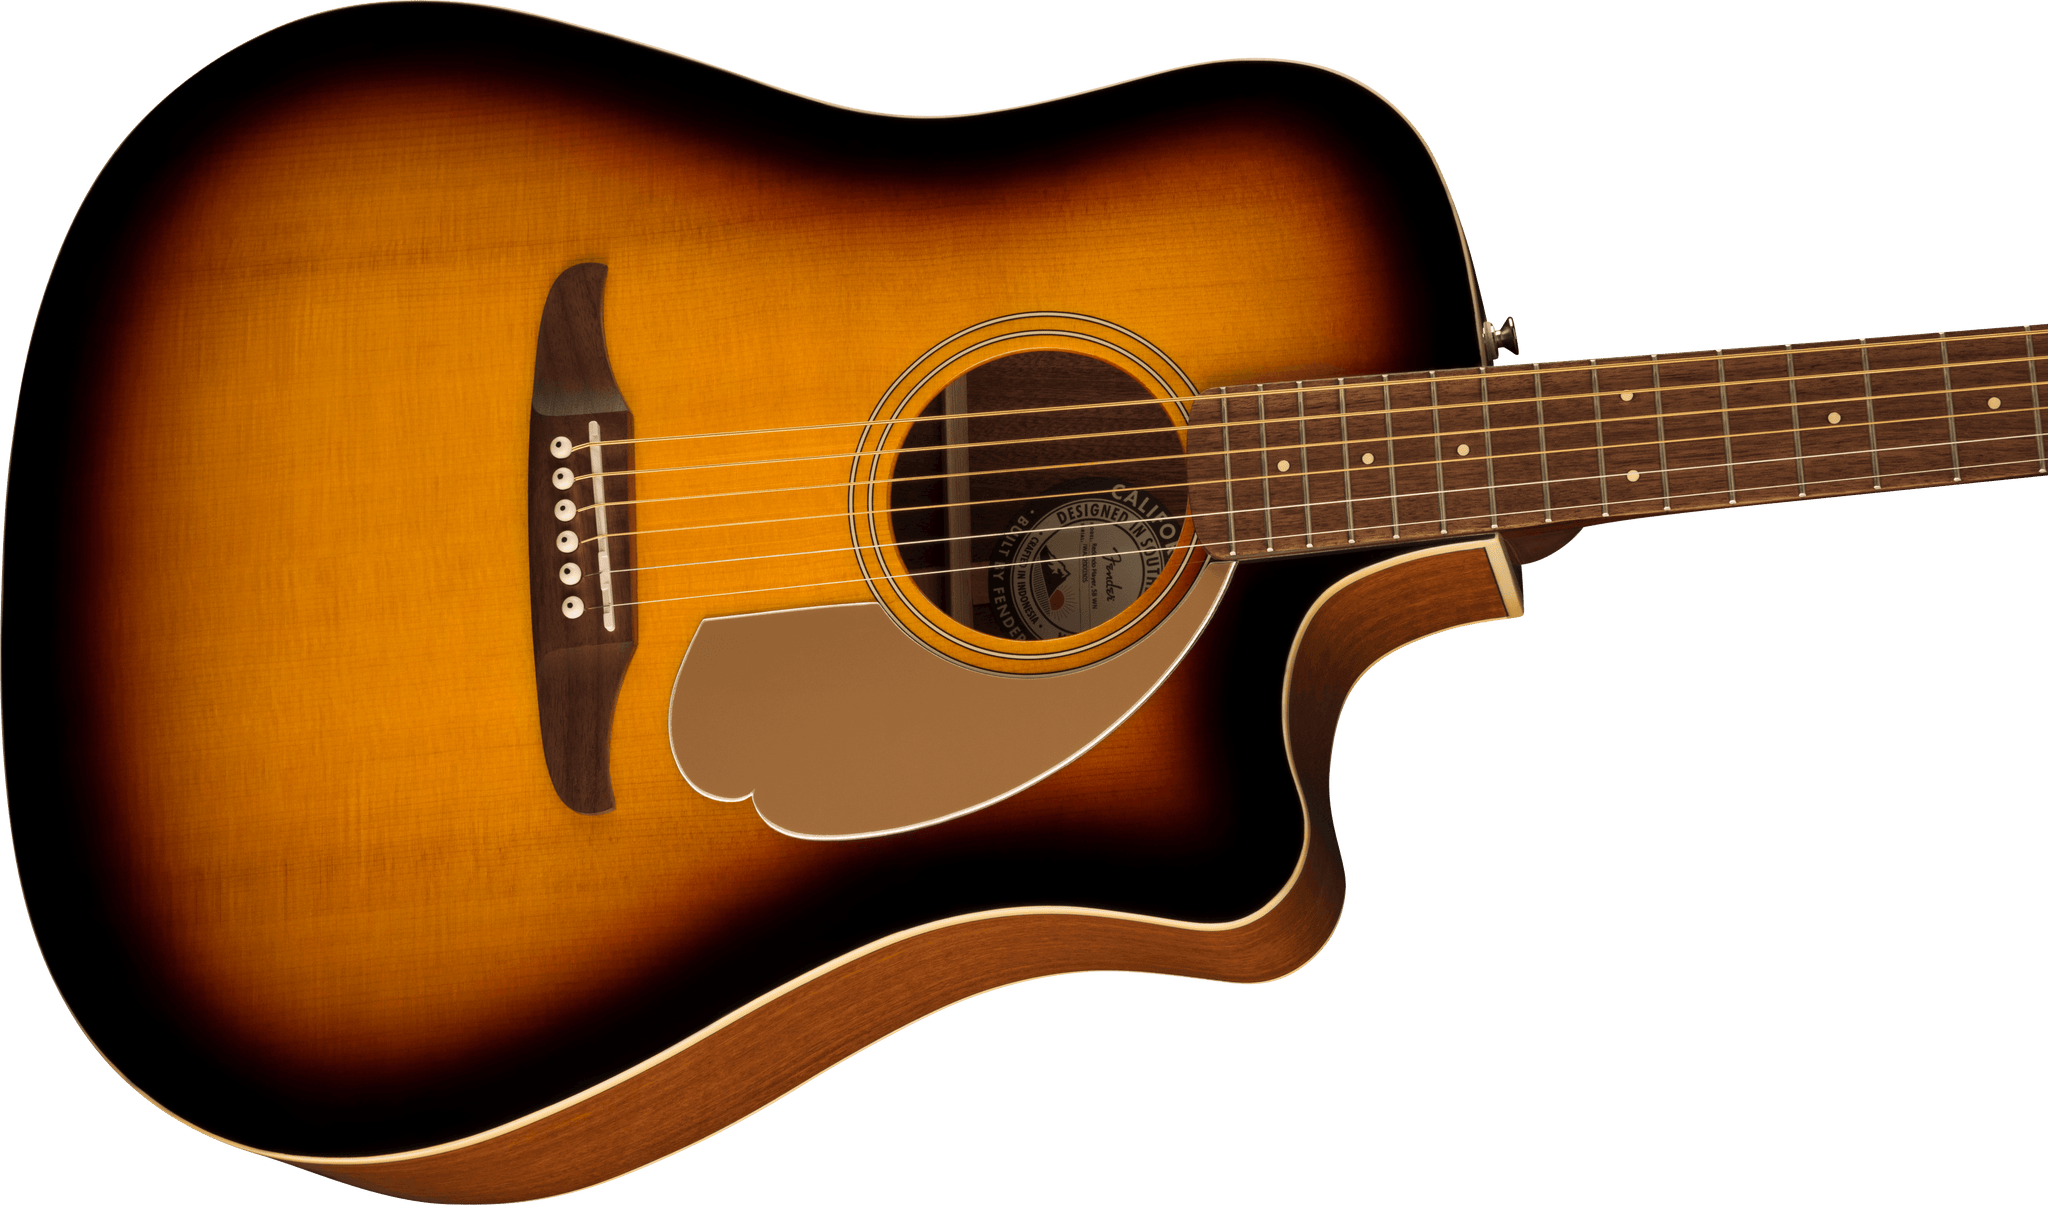 Fender Redondo Player. Sunburst